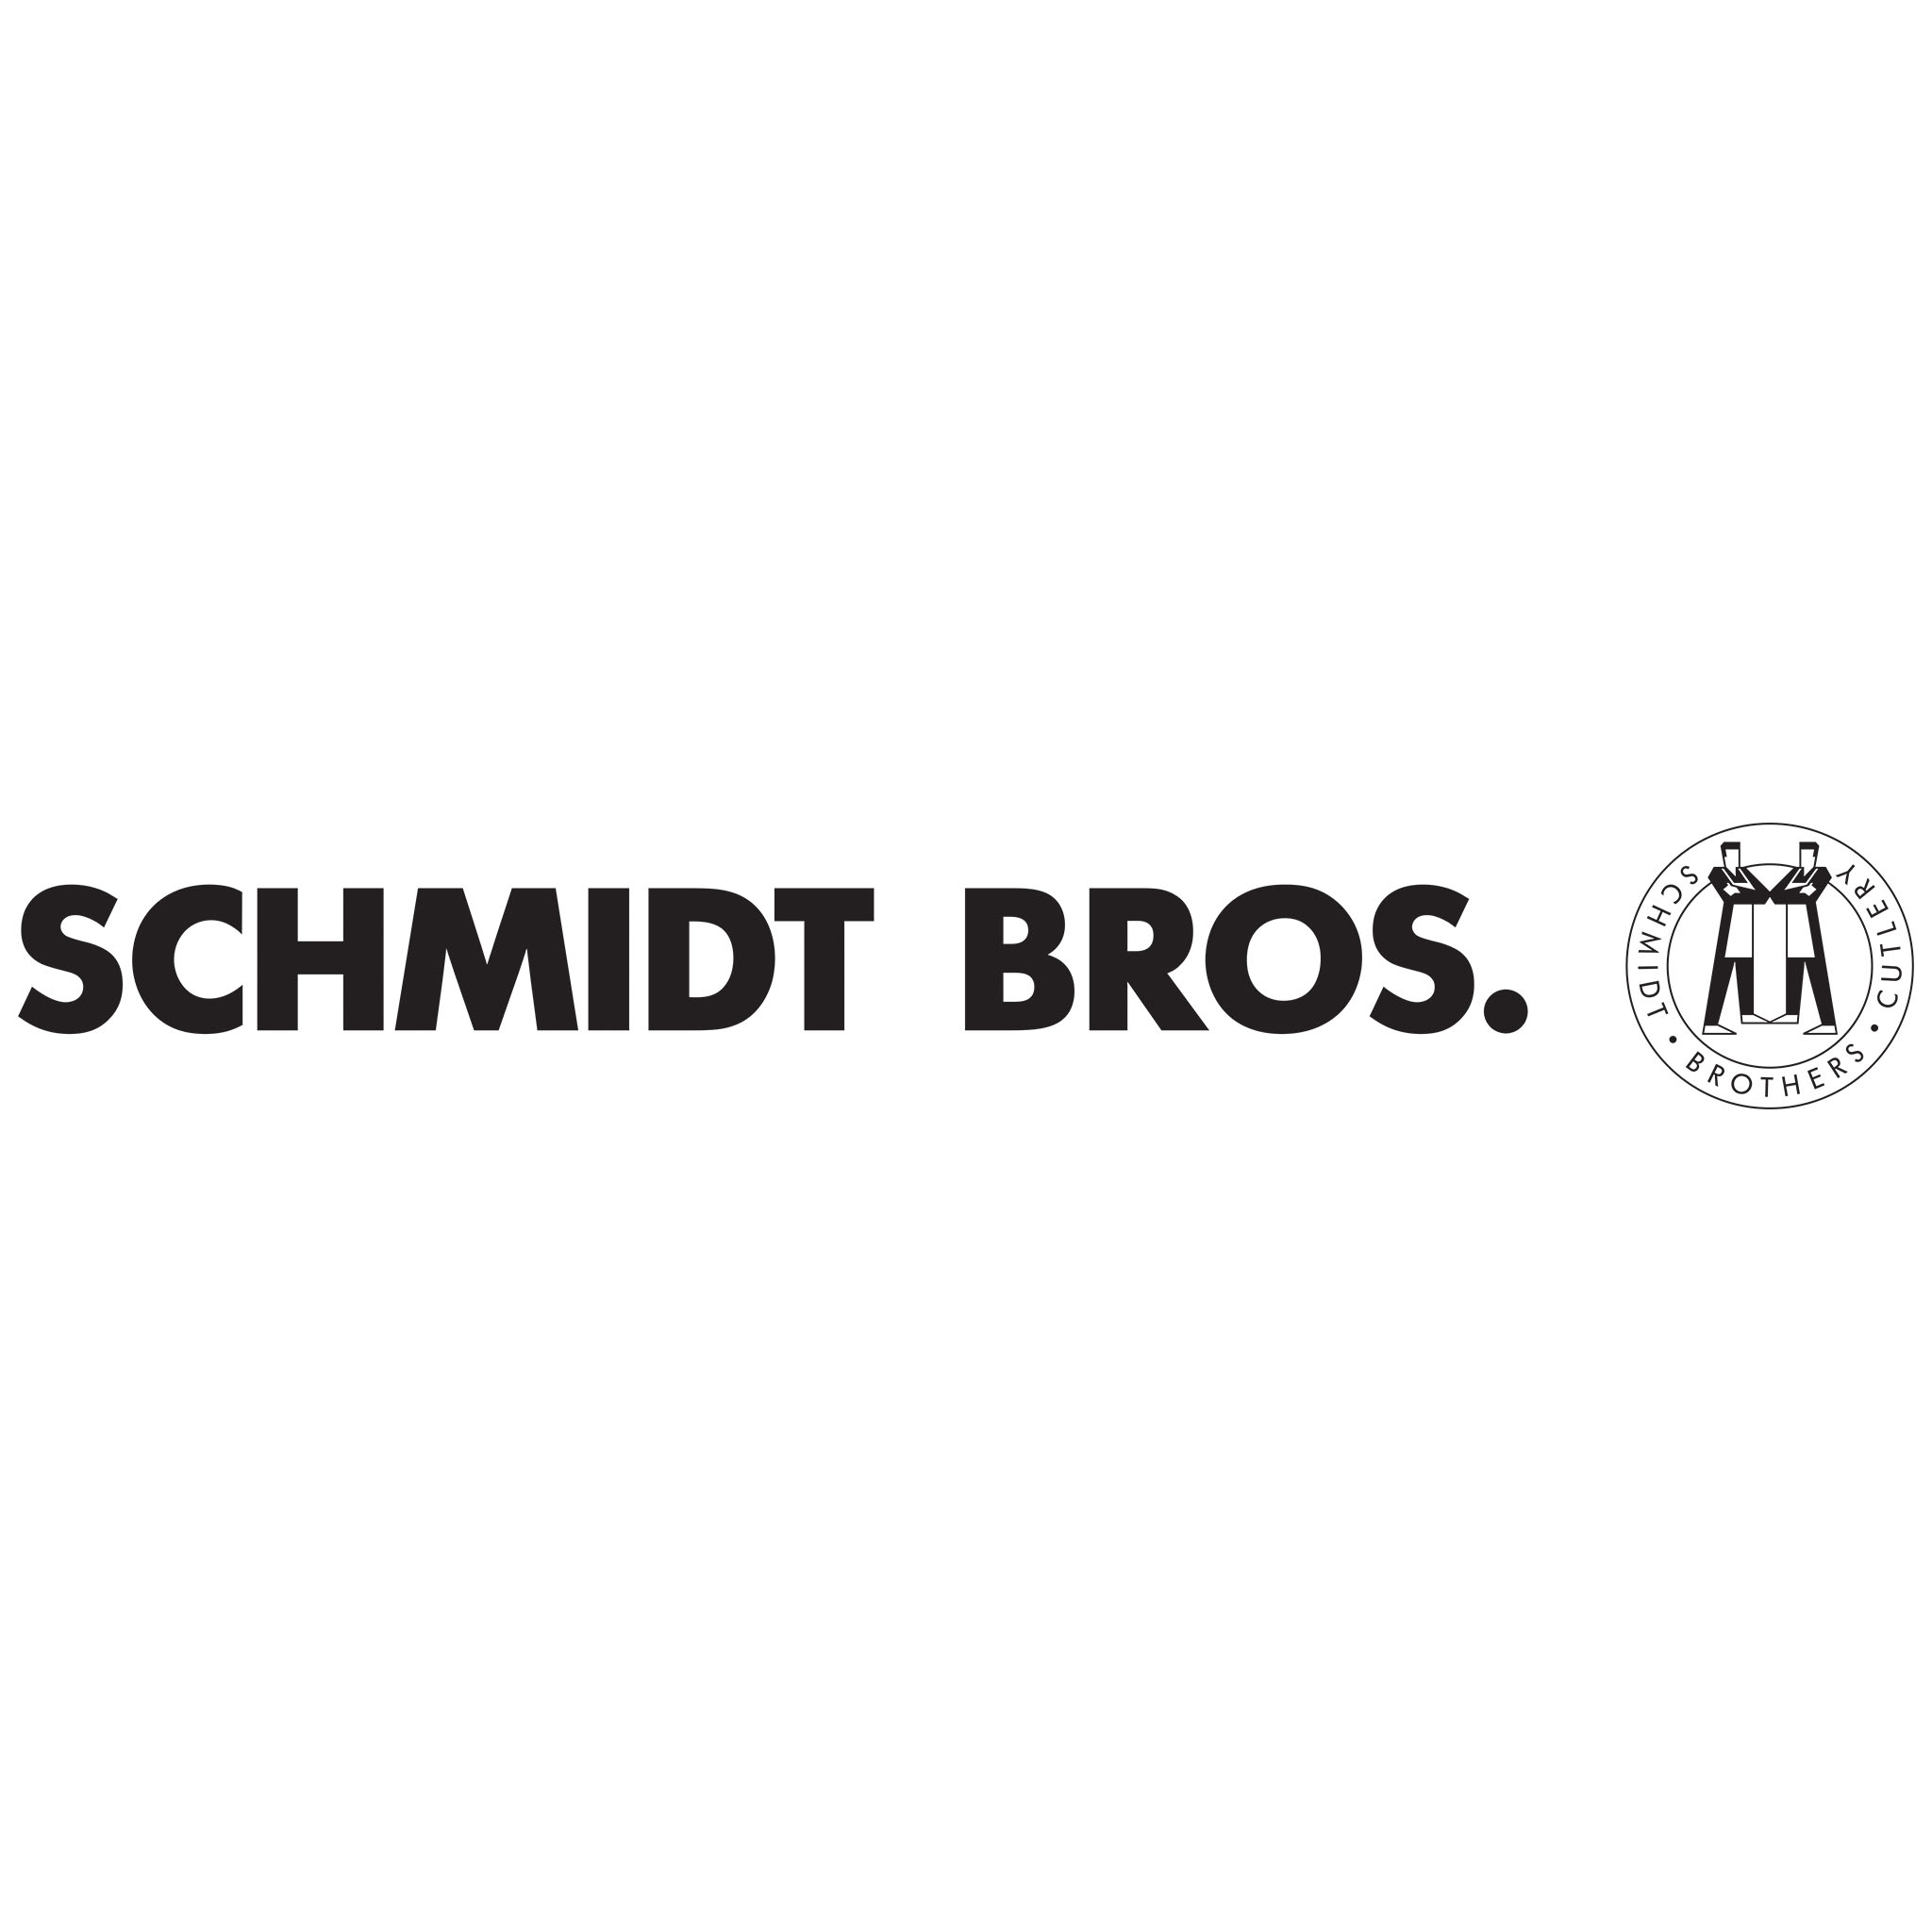 Schmidt Bros.